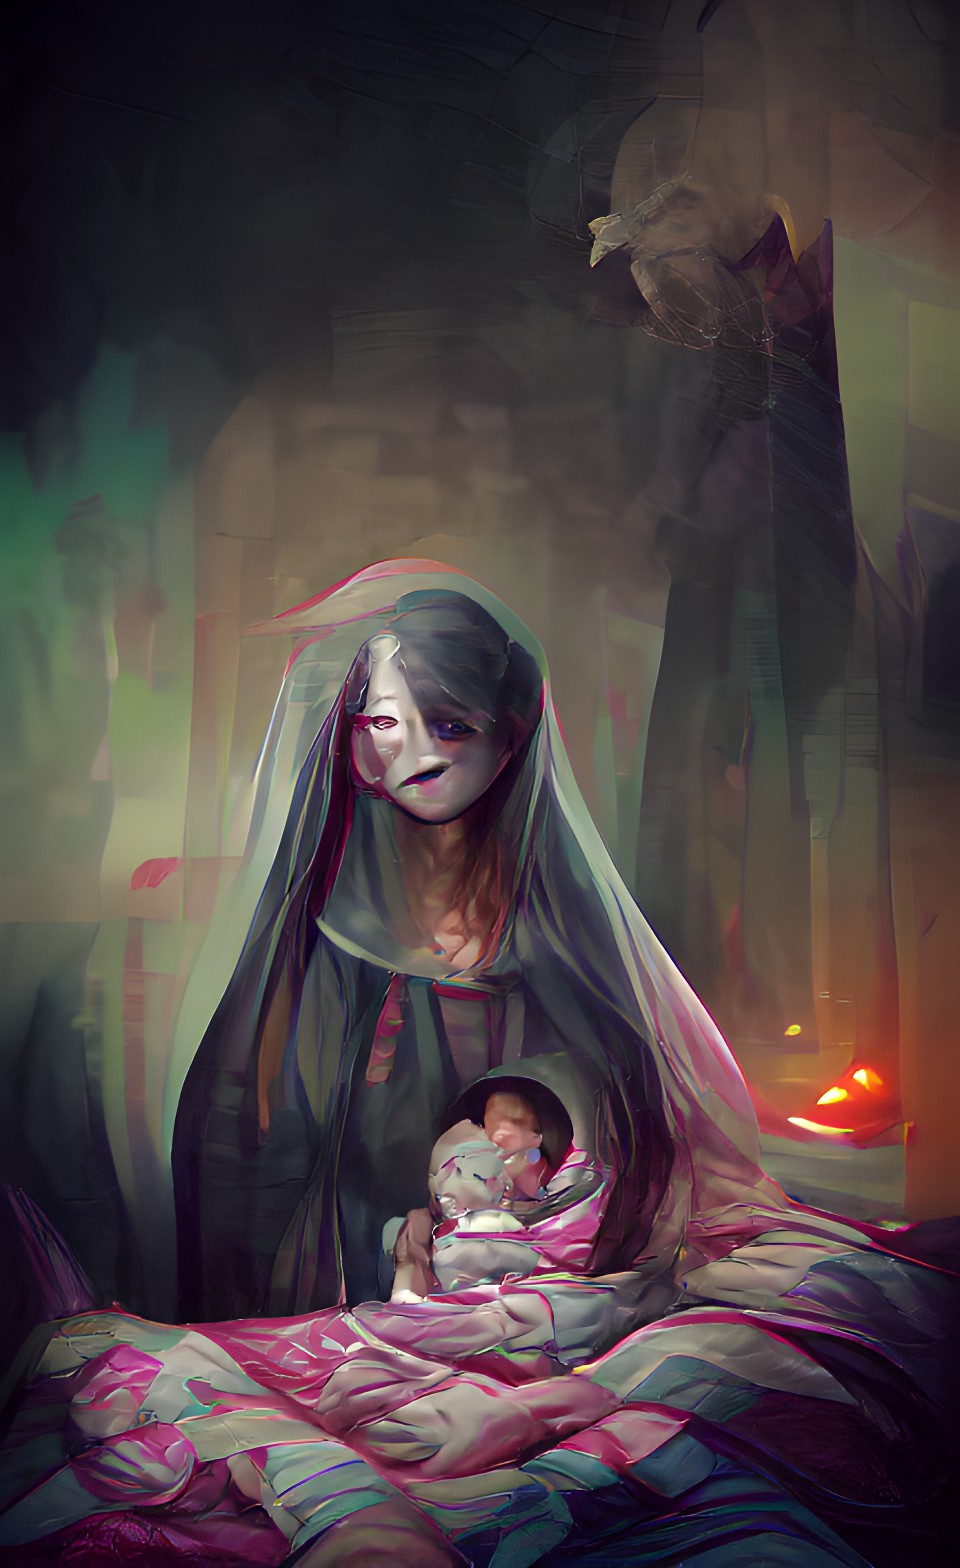 Mother's dark secret